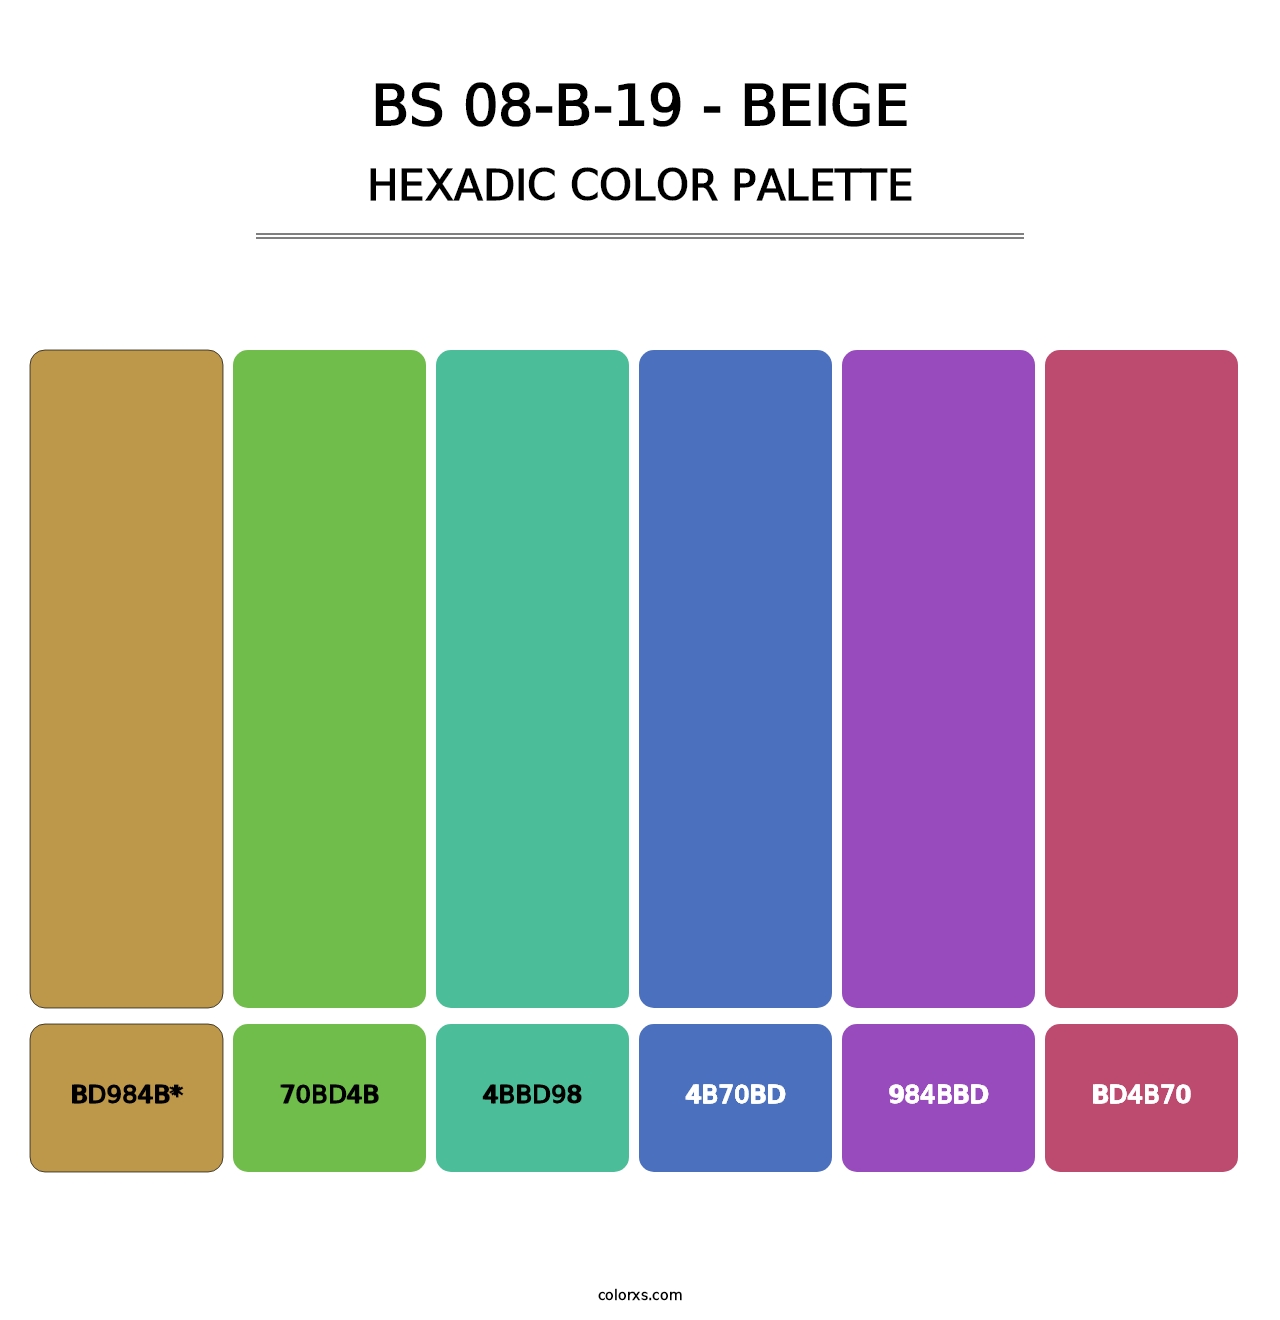 BS 08-B-19 - Beige - Hexadic Color Palette